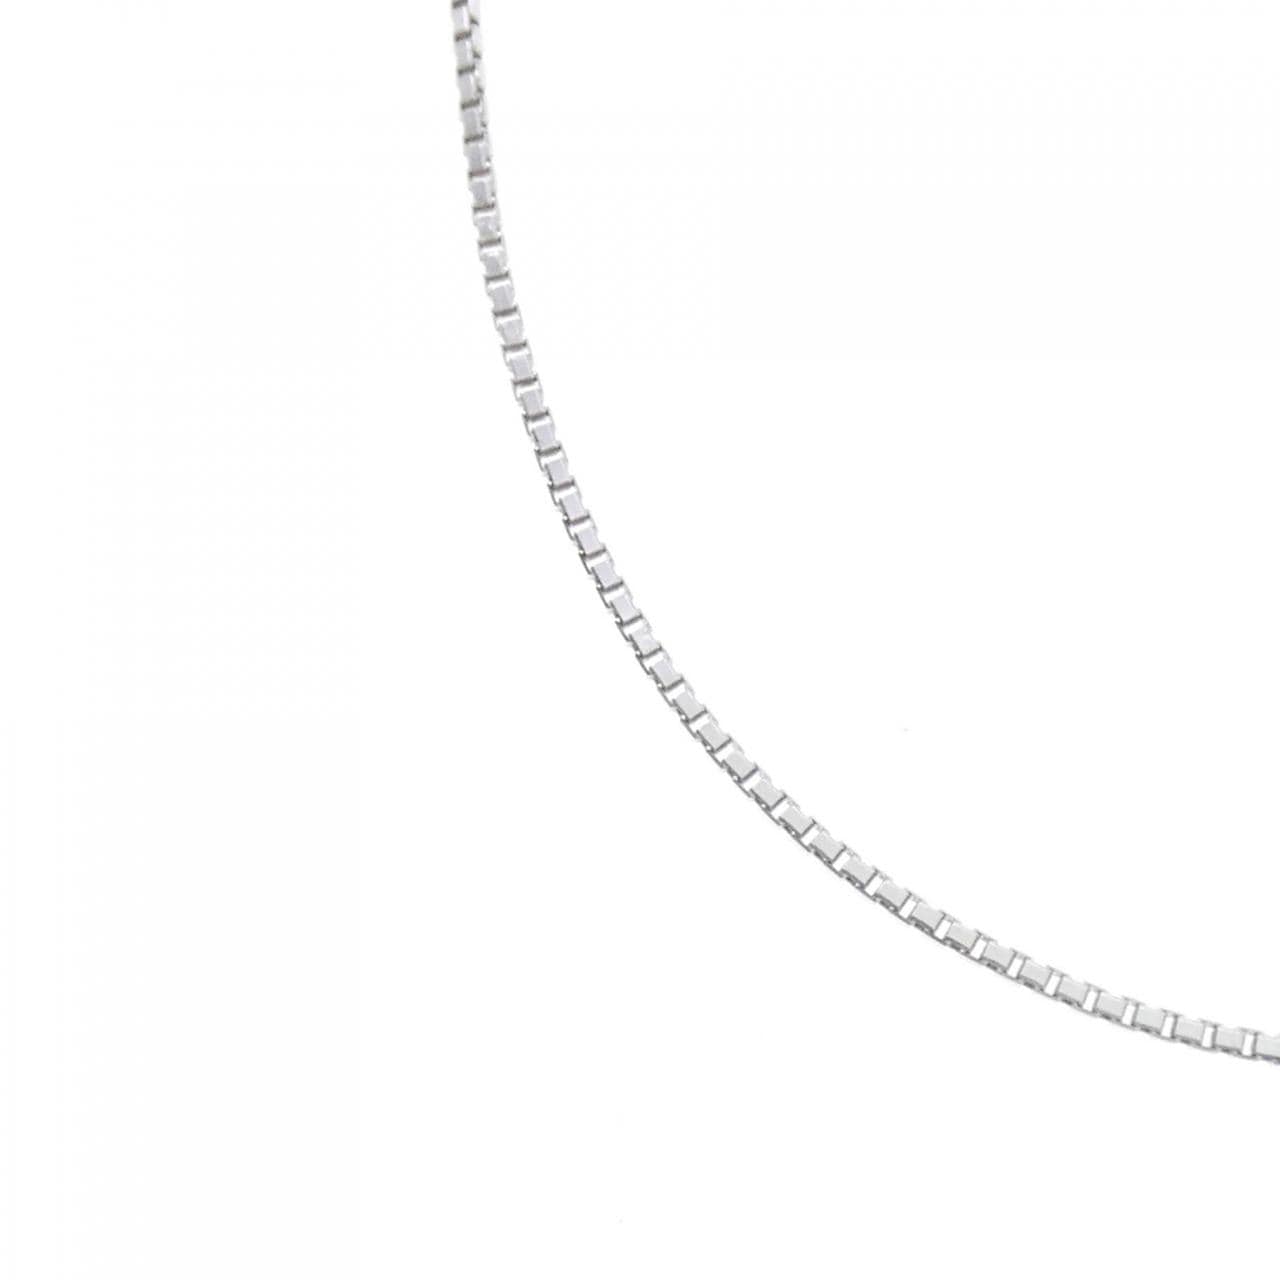 K18WG Venetian chain necklace